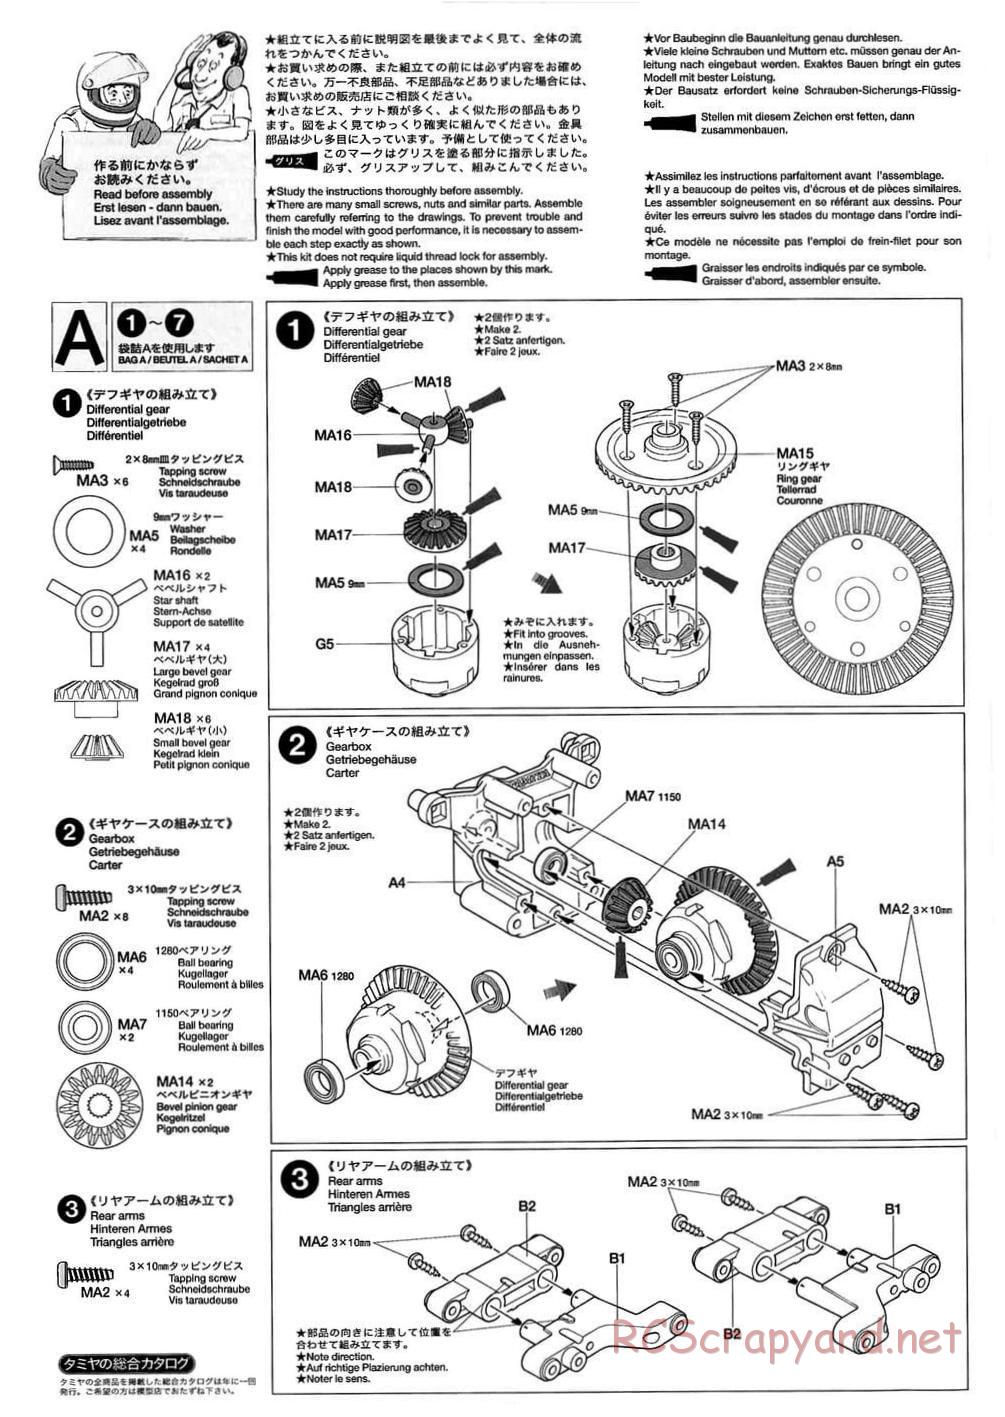 Tamiya - TB-01 Chassis - Manual - Page 4